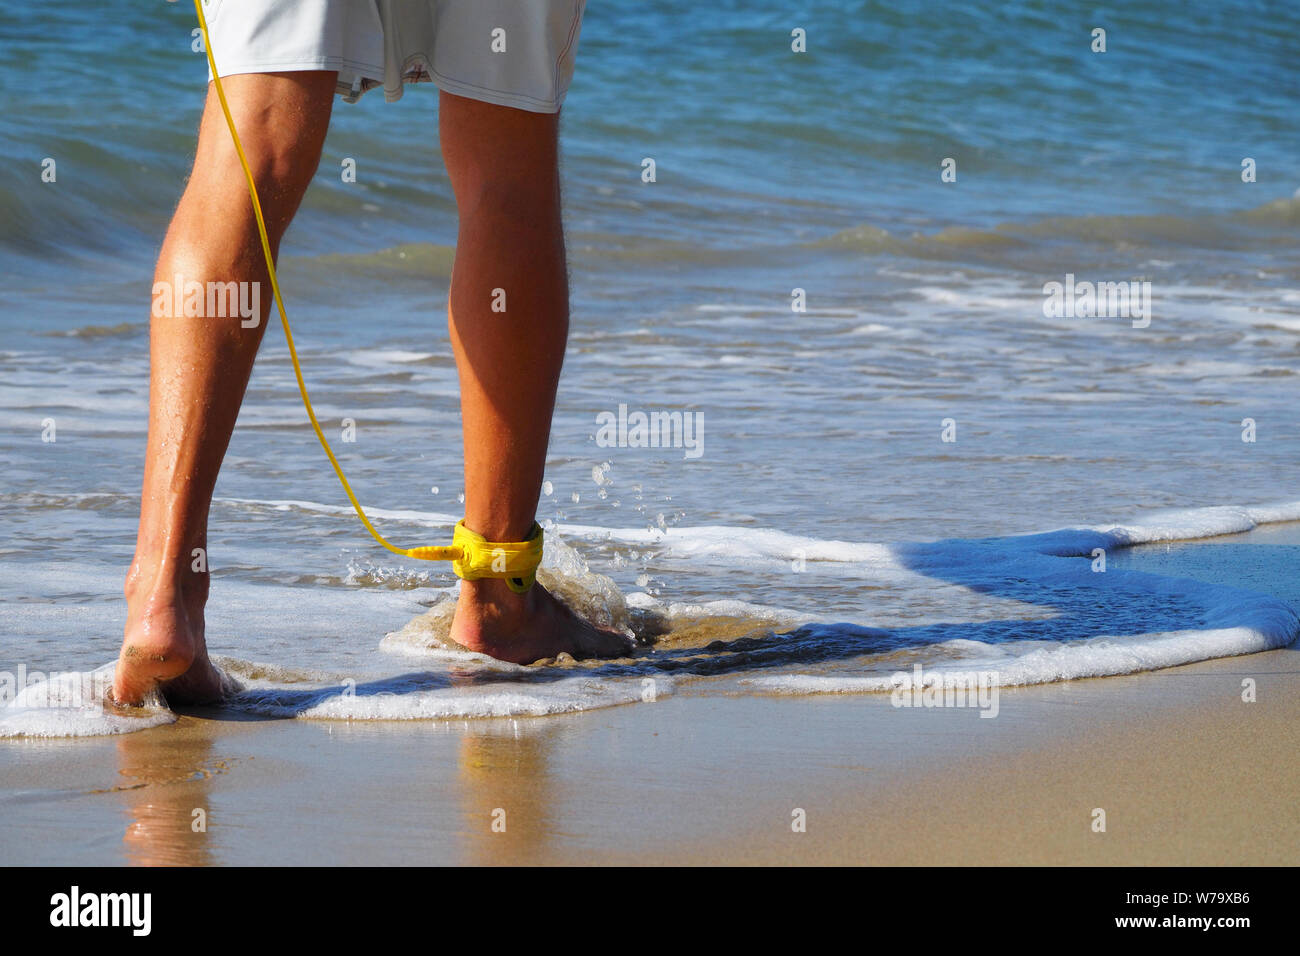 Close-up ein Surfer zu Fuß am Strand entlang auf seinem Fuß eine gelbe Leine. Atlantik. Sandstrand. In shorts gebräunte Beine angezogen. Stockfoto